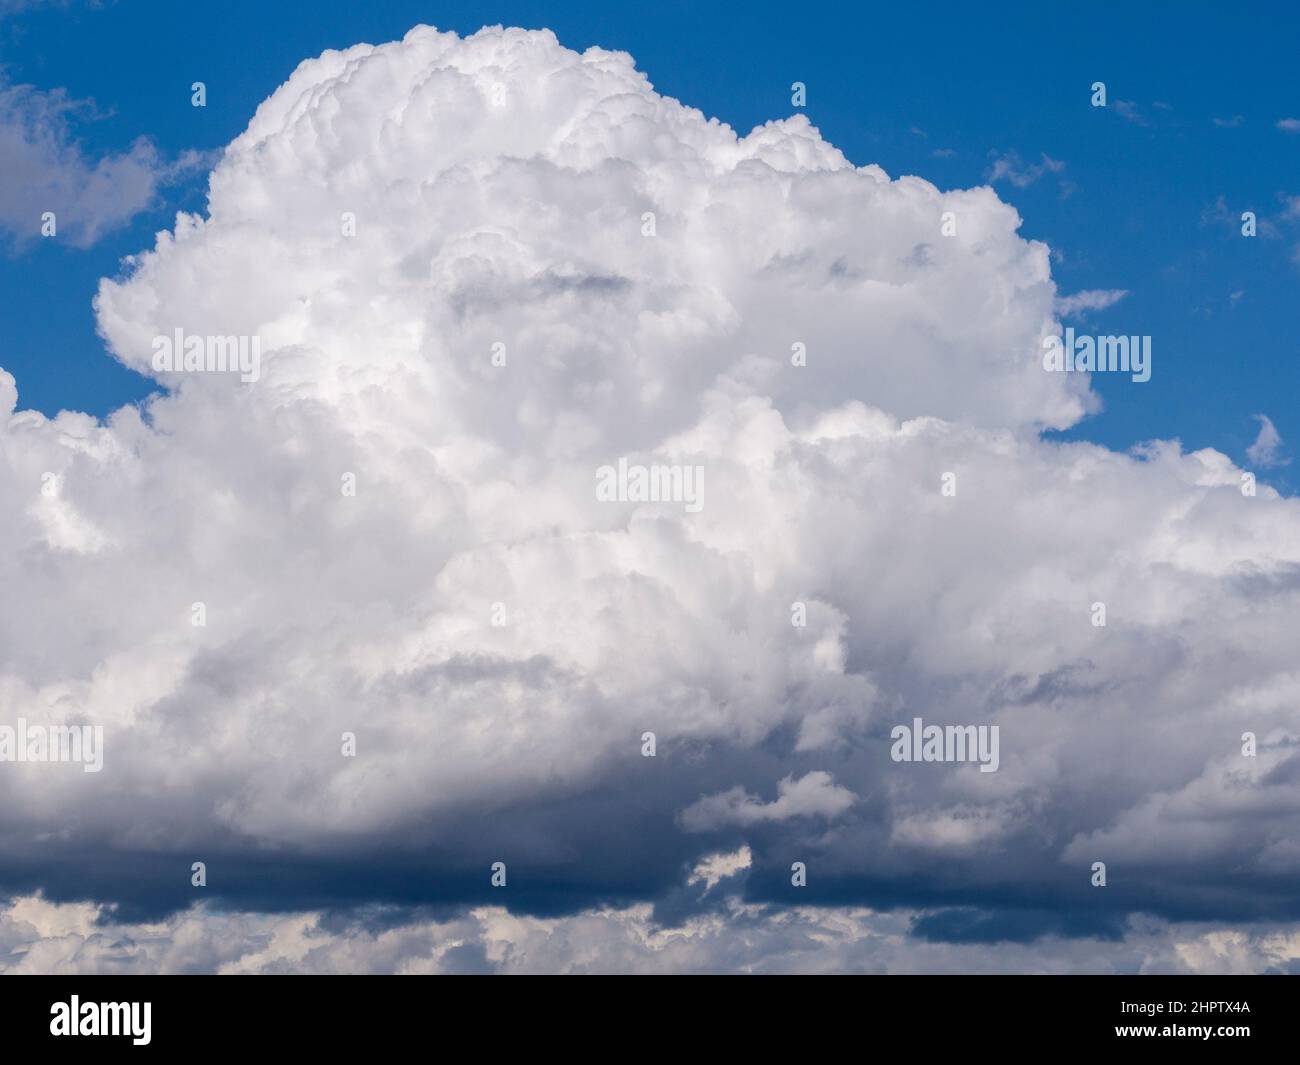 Construyendo la Nube de Tormenta: Un edificio de nube de tormenta de lage cumulus sobre el río Ottawa. Un cielo azul brillante por encima, gris oscuro por debajo. Foto de stock